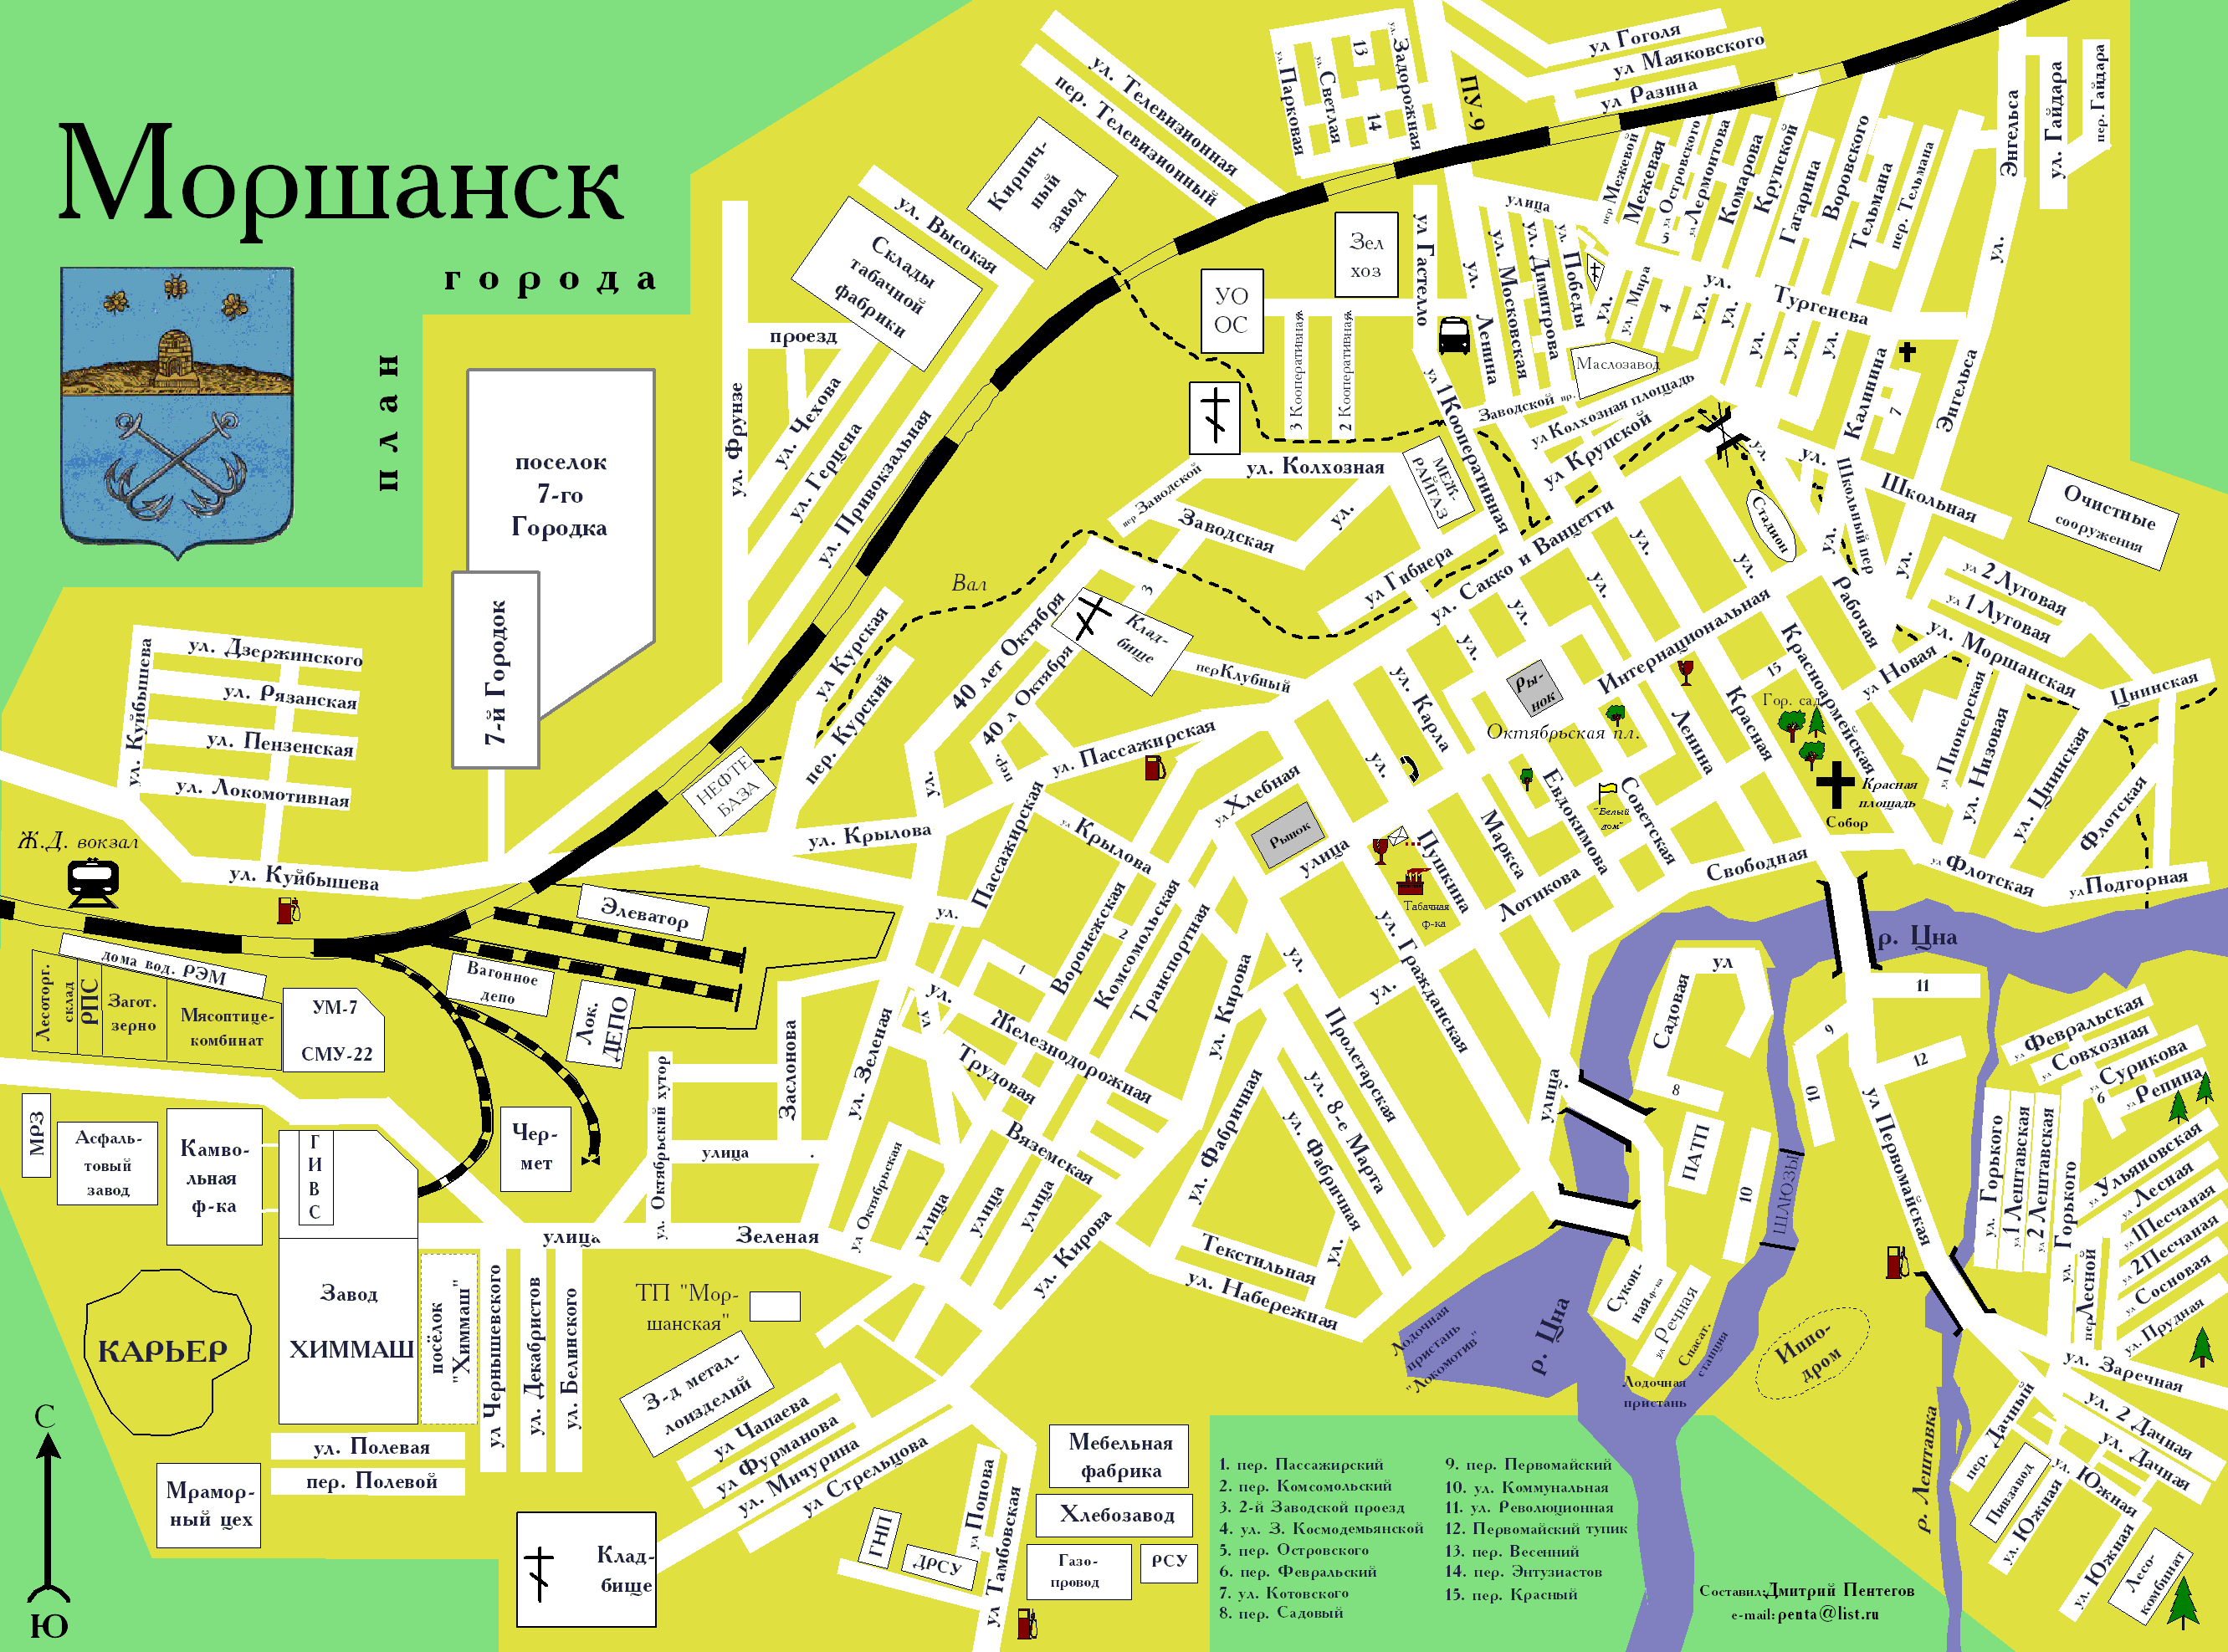 Моршанск - Карты города и окрестностей